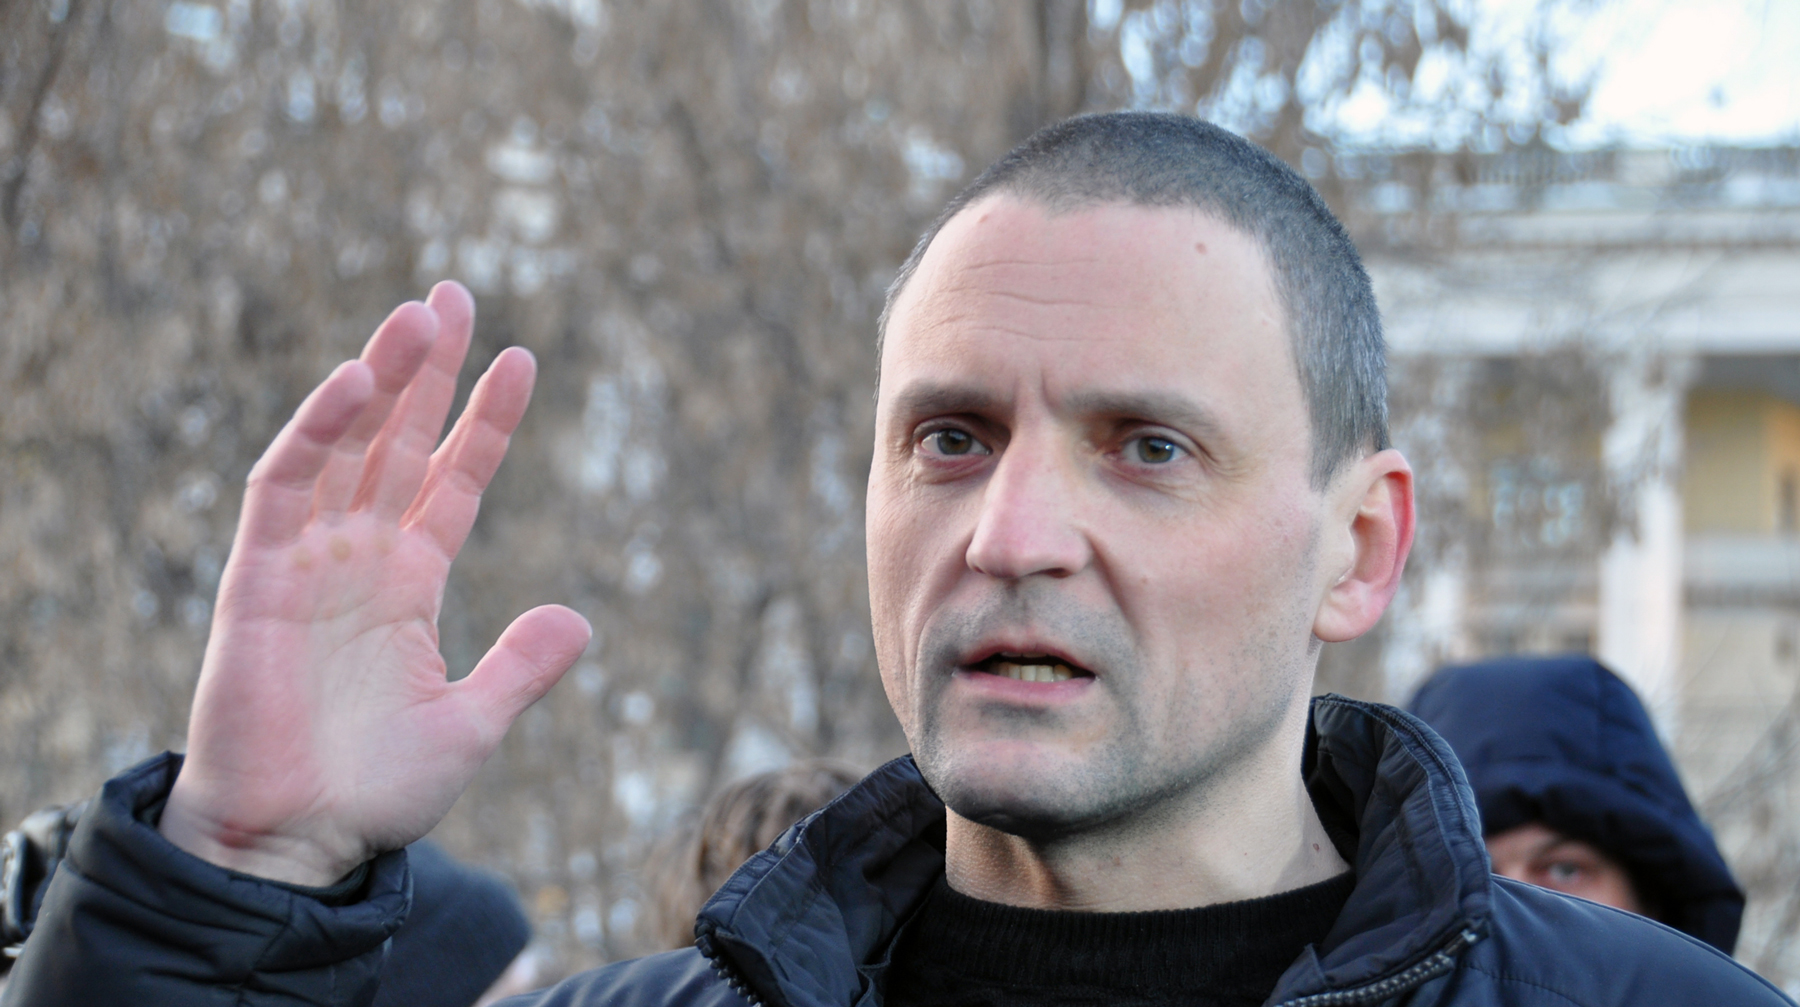 Сергей Удальцов рассказал «Шторму» об амбициях левых сил, отношениях с Яшиным и Навальным, а также о взаимодействии с либералами Фото: © GLOBAL LOOK press/Syrucek Milan